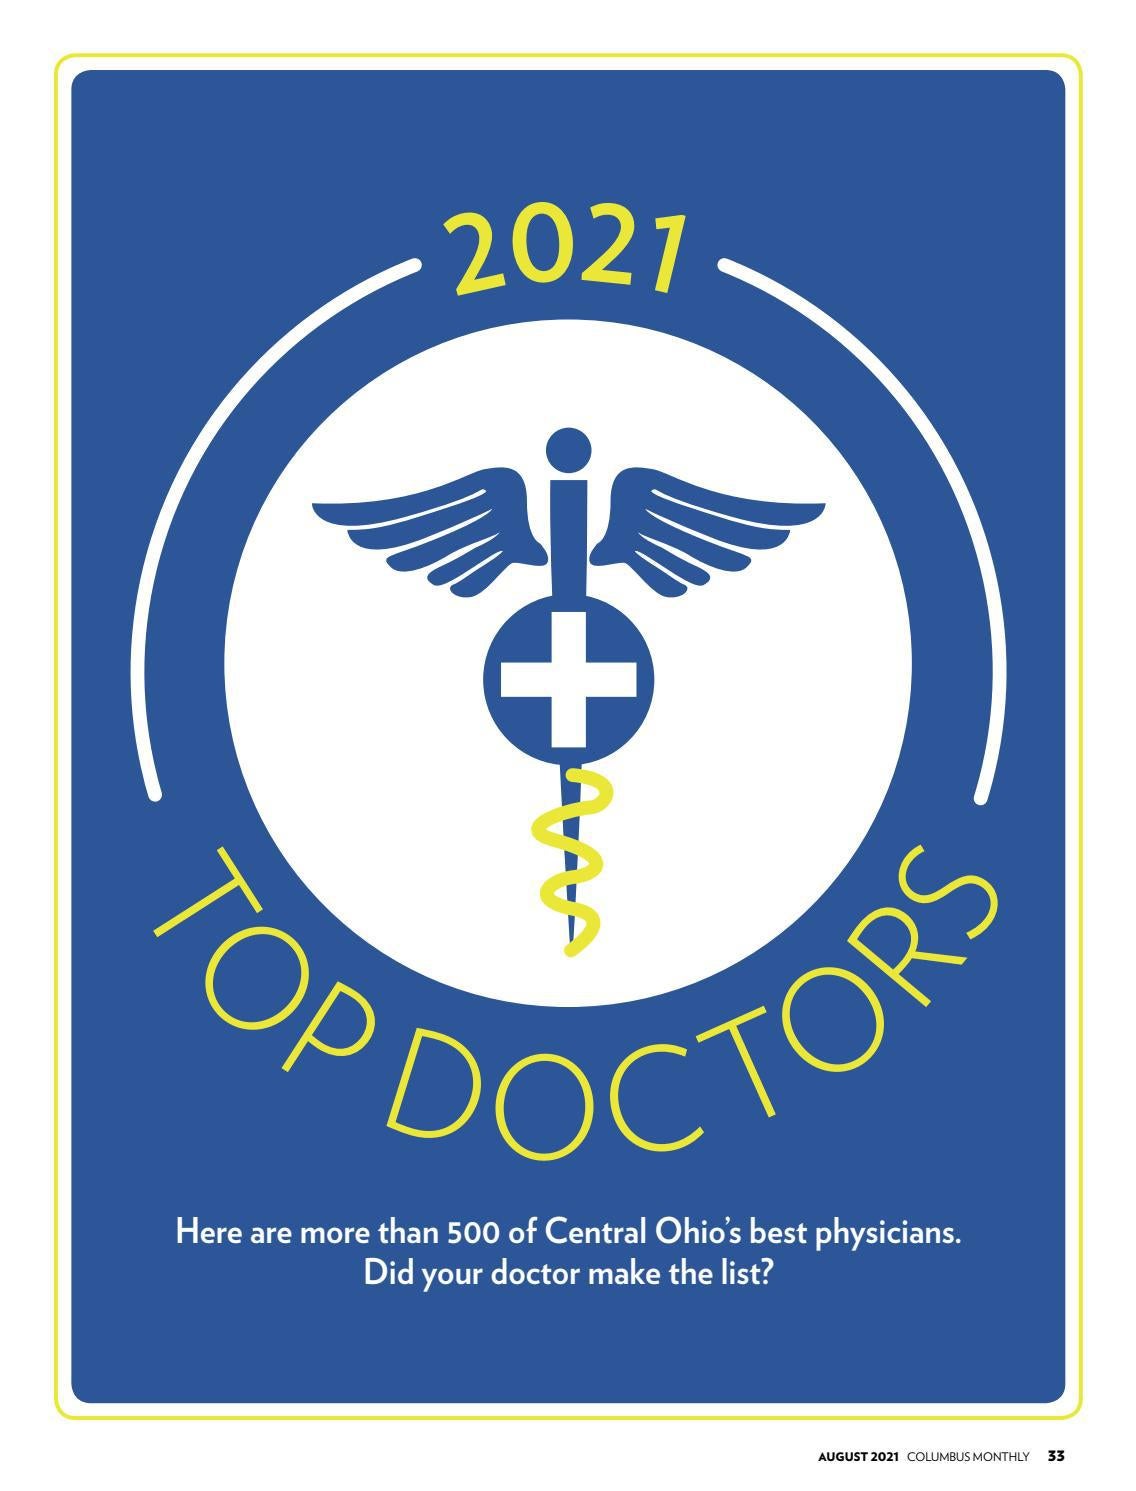 Top Doctors Magazine, August 2021